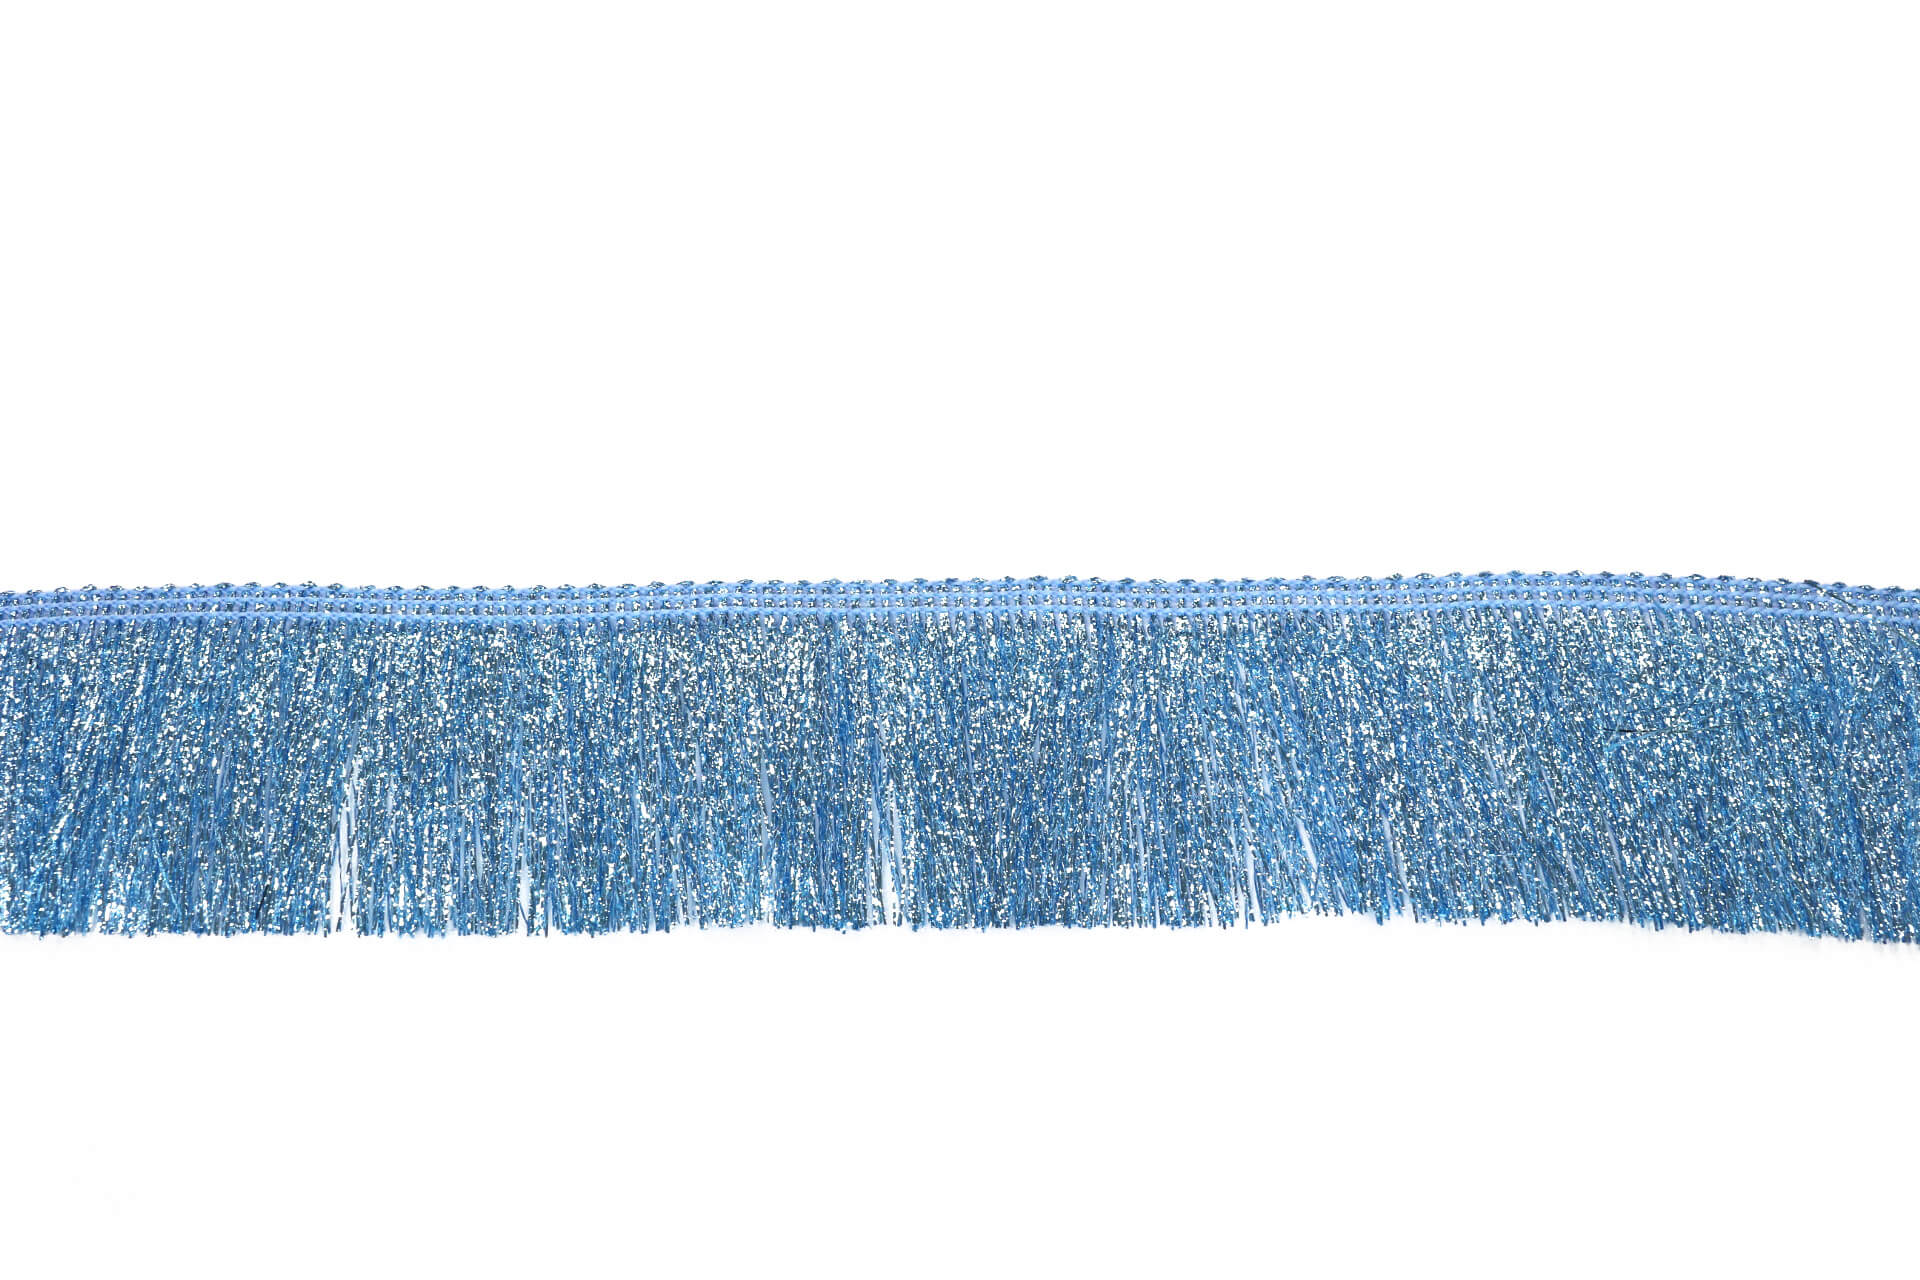 Декоративная бахрома 5 см для Walk of shame, цвет Голубой, фото 1